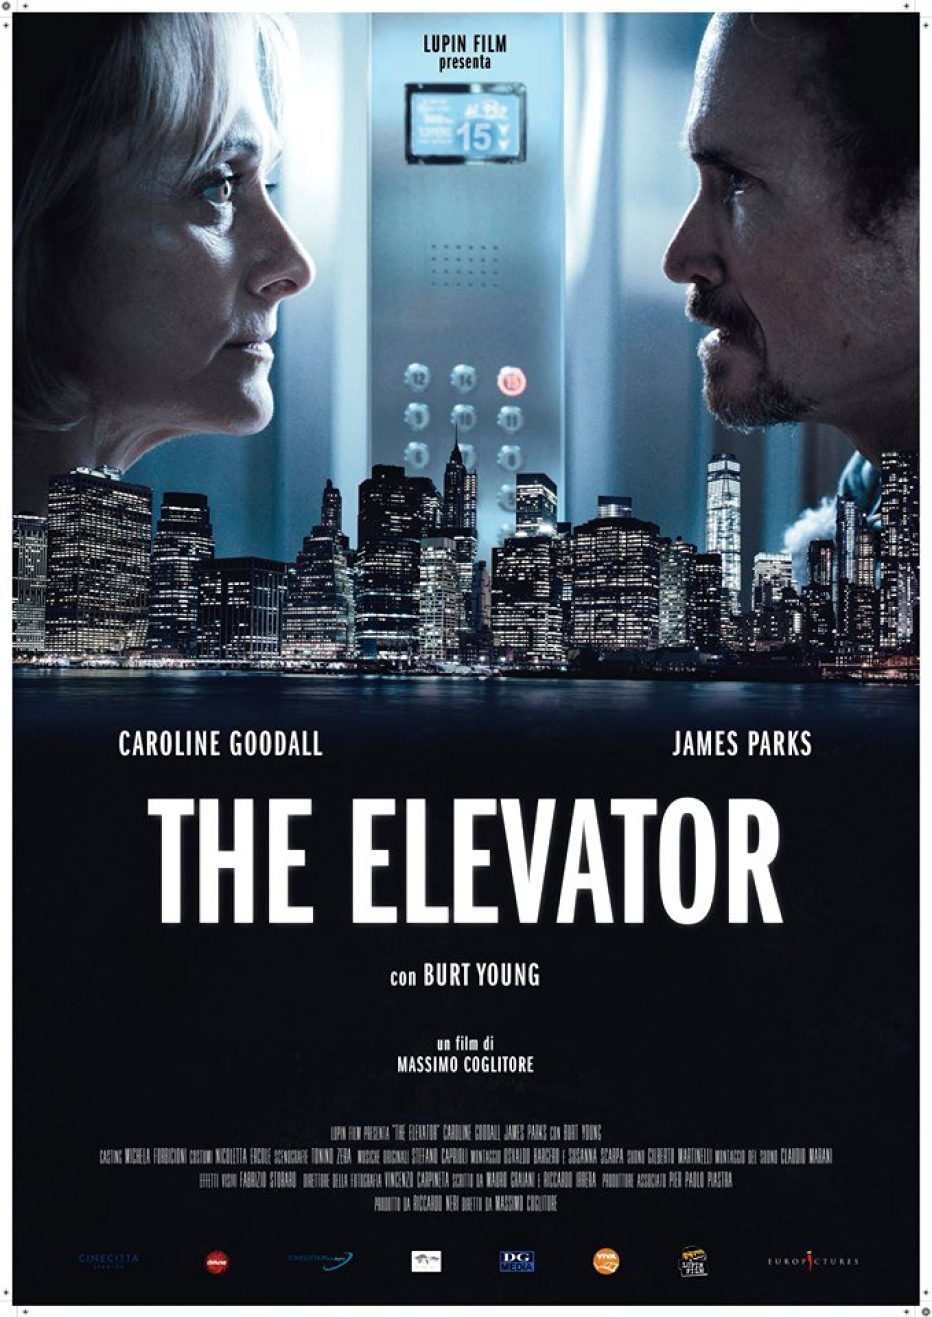 The Elevator: intervista esclusiva al regista Coglitore